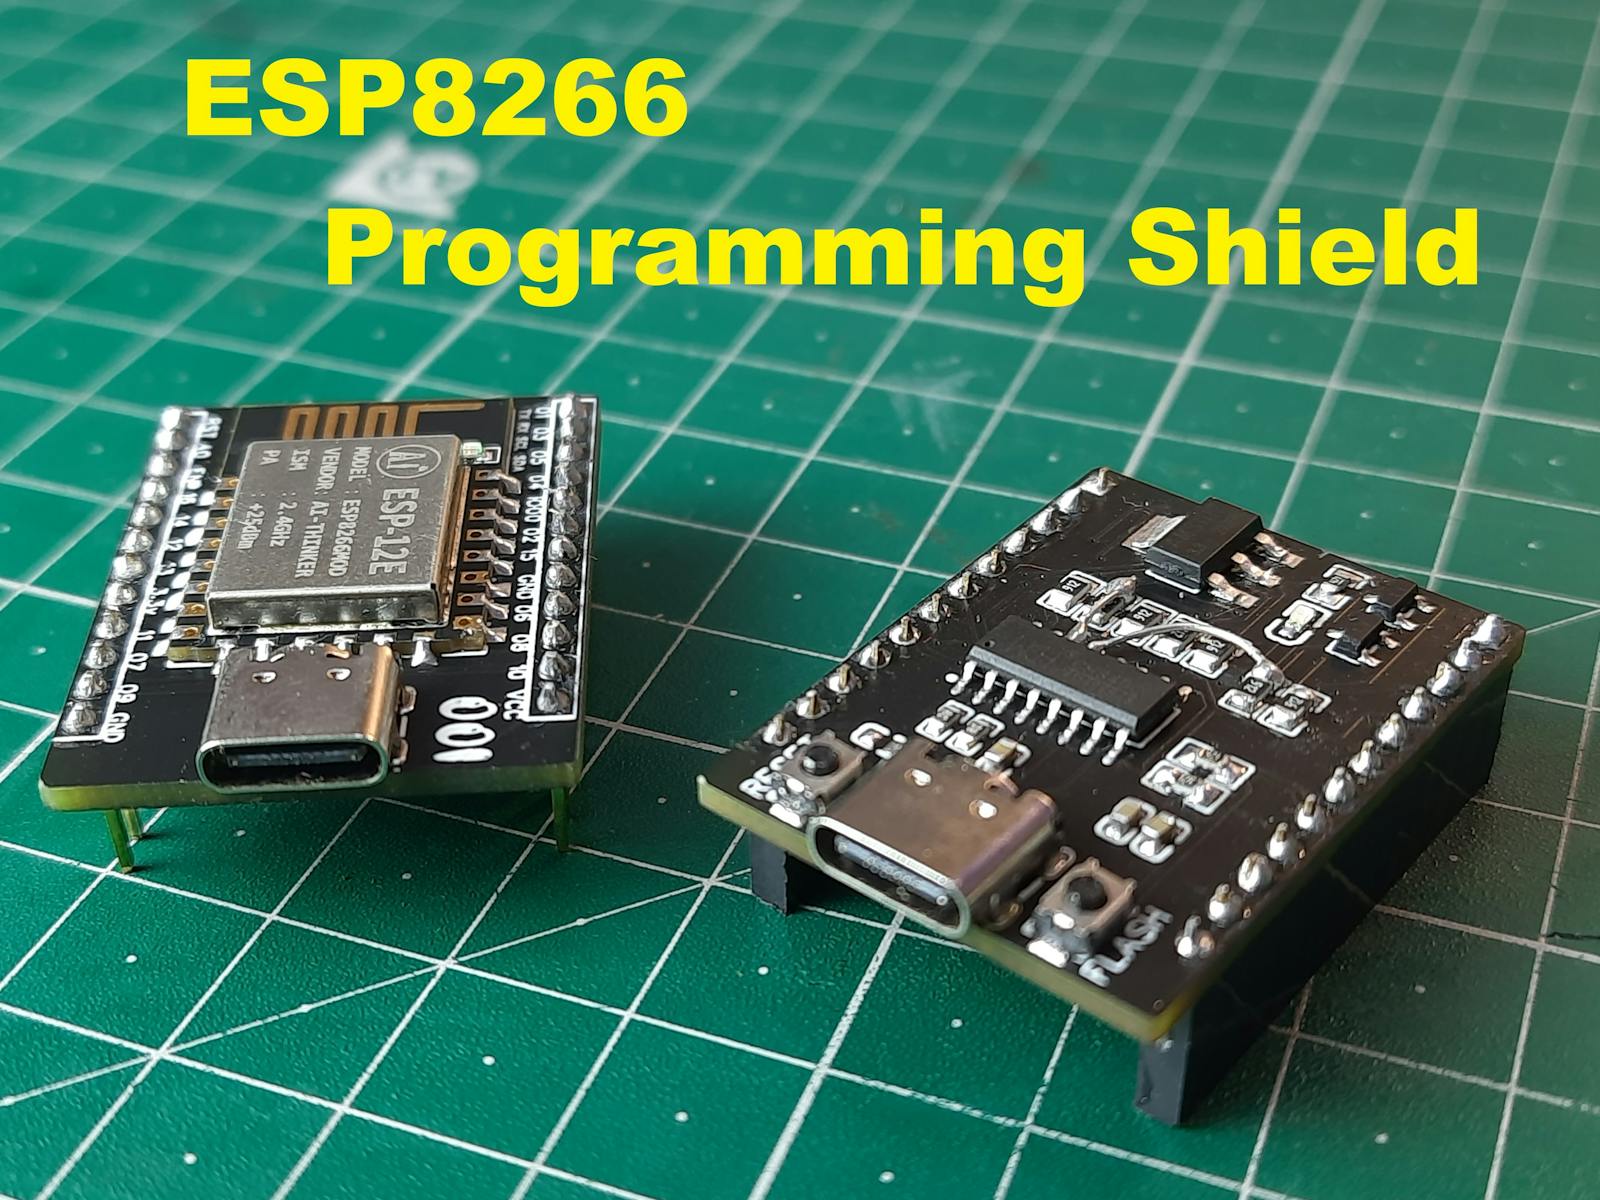 Componer inoxidable póngase en fila ESP8266 Programming Shield is Insane - Hackster.io